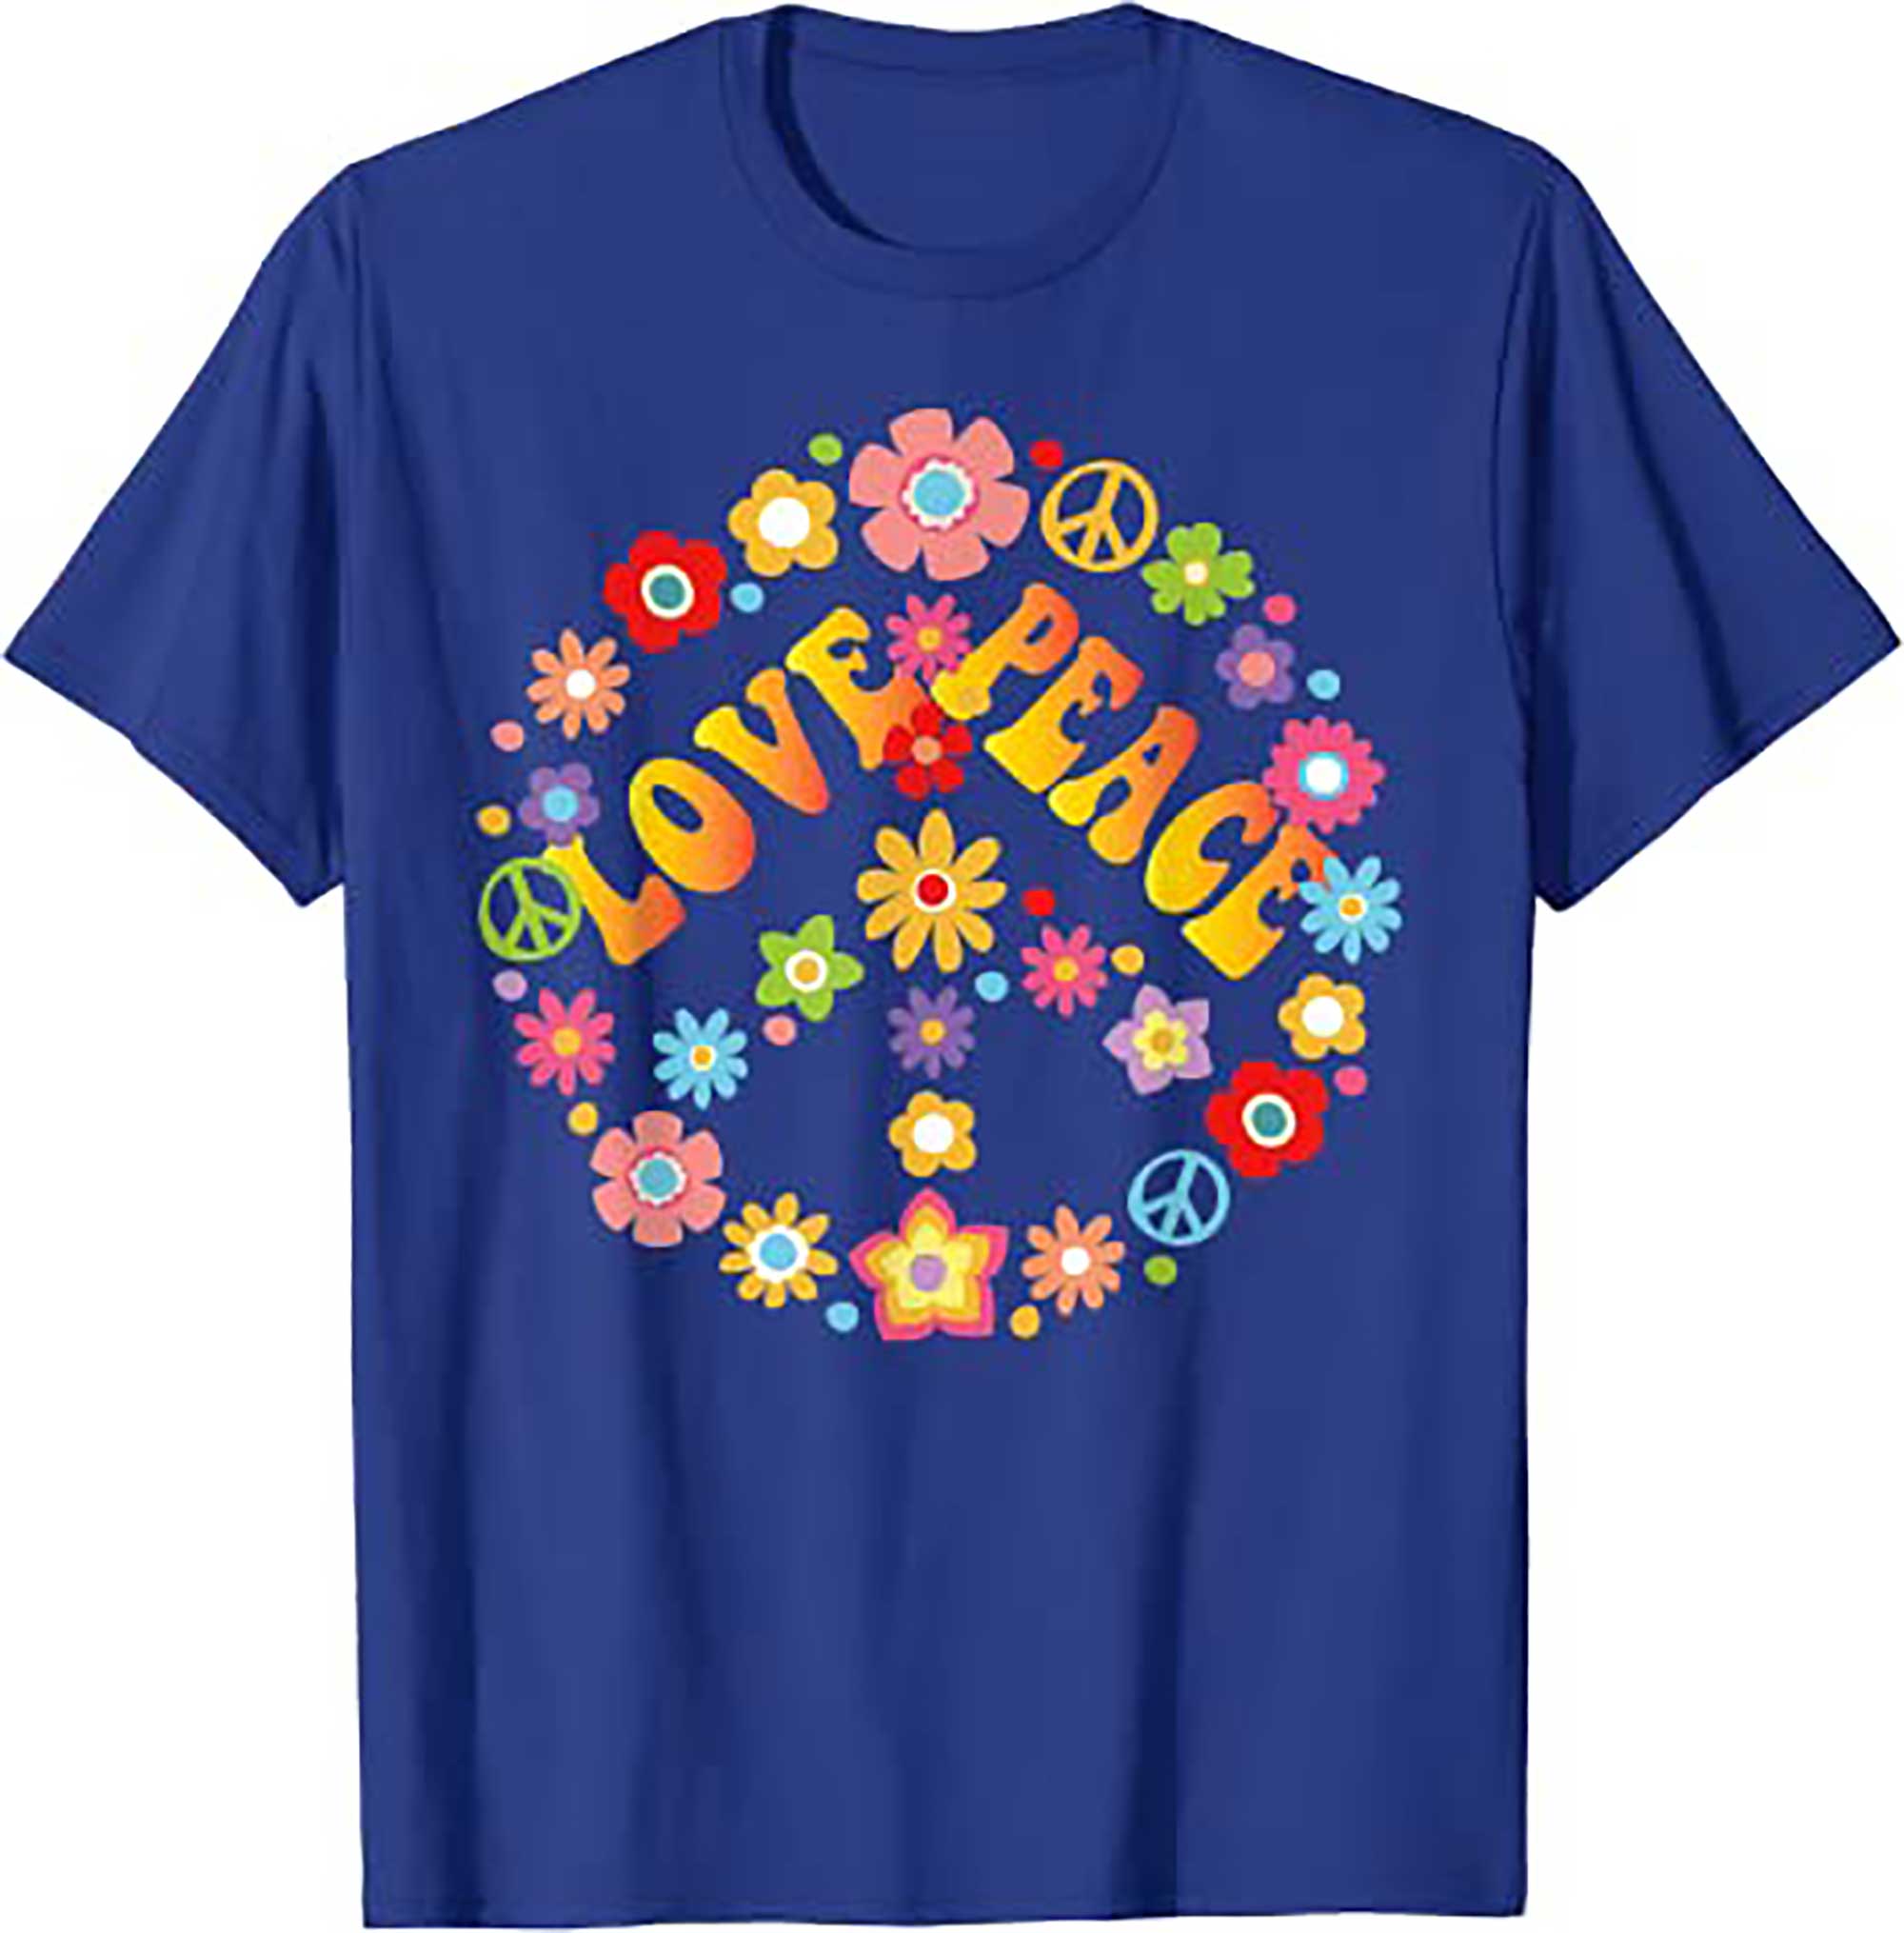 Skitongift PEACE SIGN LOVE T Shirt 60s 70s Tie Dye Hippie Costume Shirt T Shirt